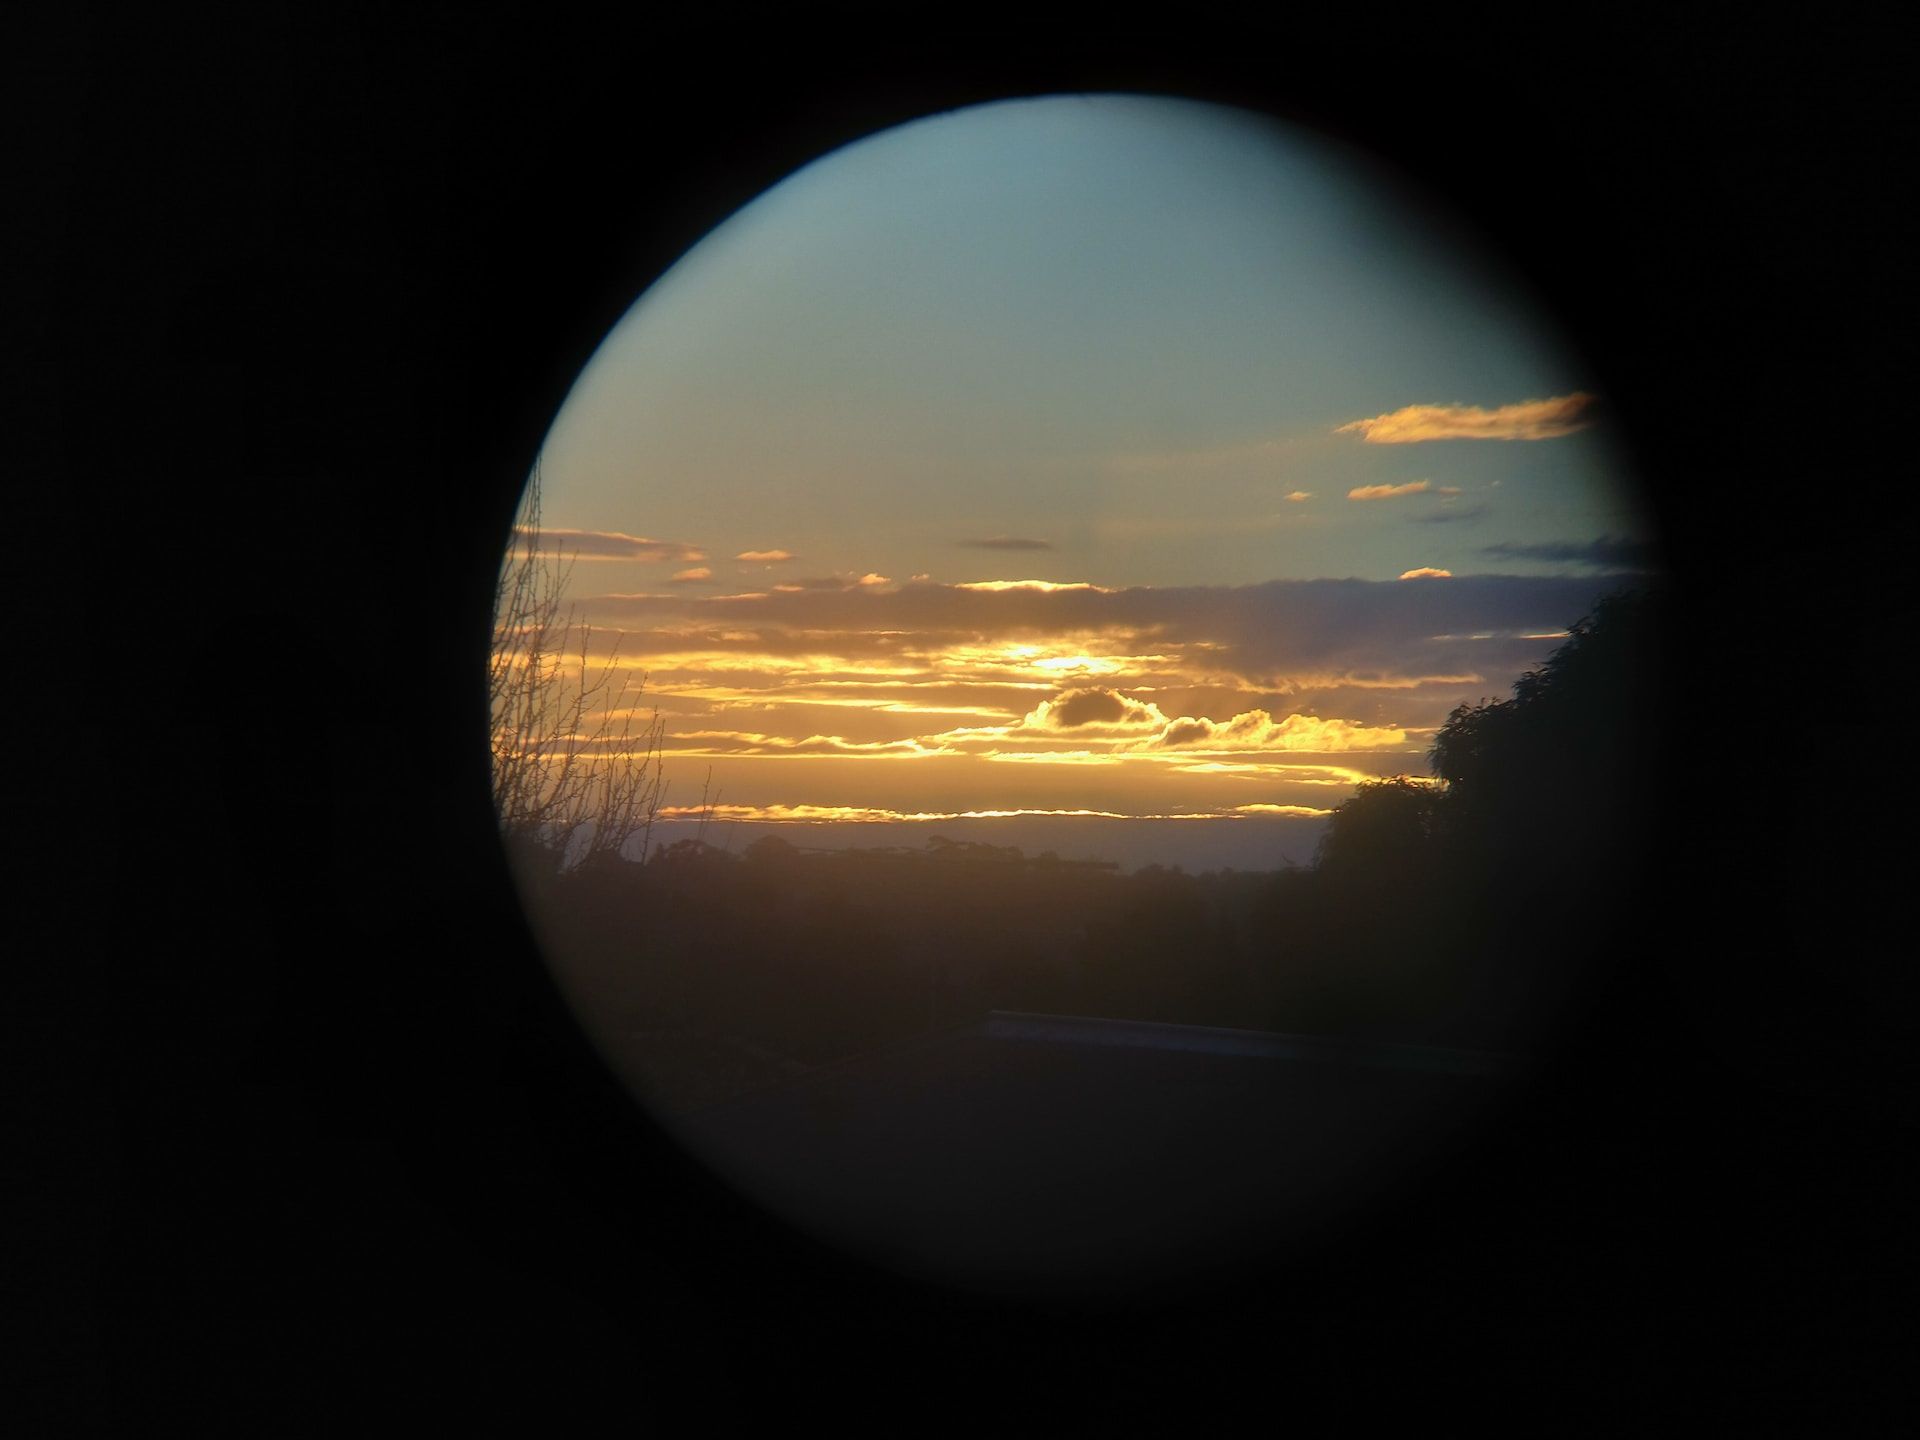 coucher de soleil vu à travers un télescope - Photo by Arnold Zhou on https://unsplash.com/fr/photos/s5Hq_YBzZF0